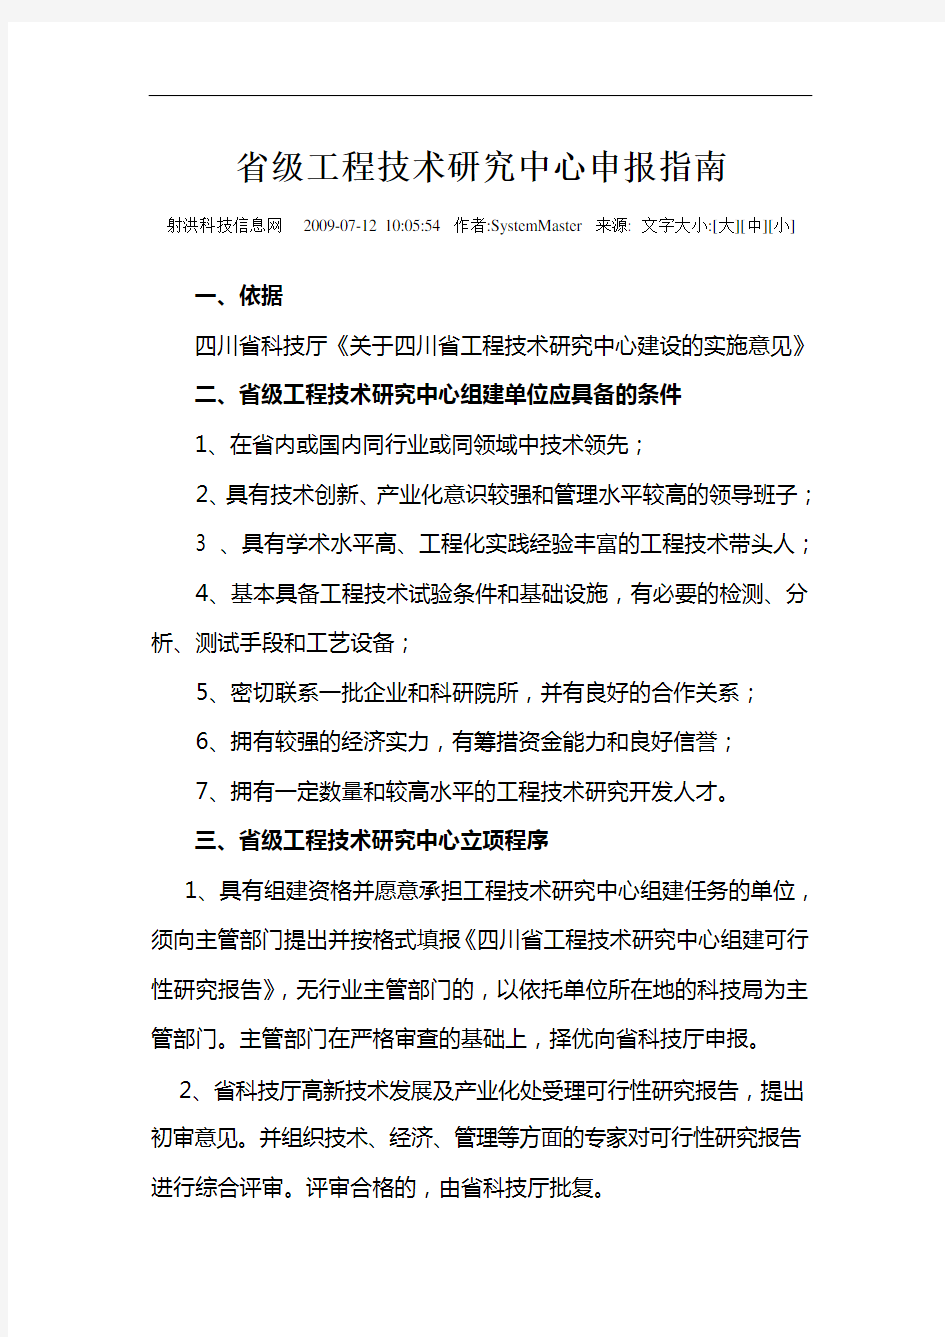 四川省工程技术研究中心项目申报流程及要求